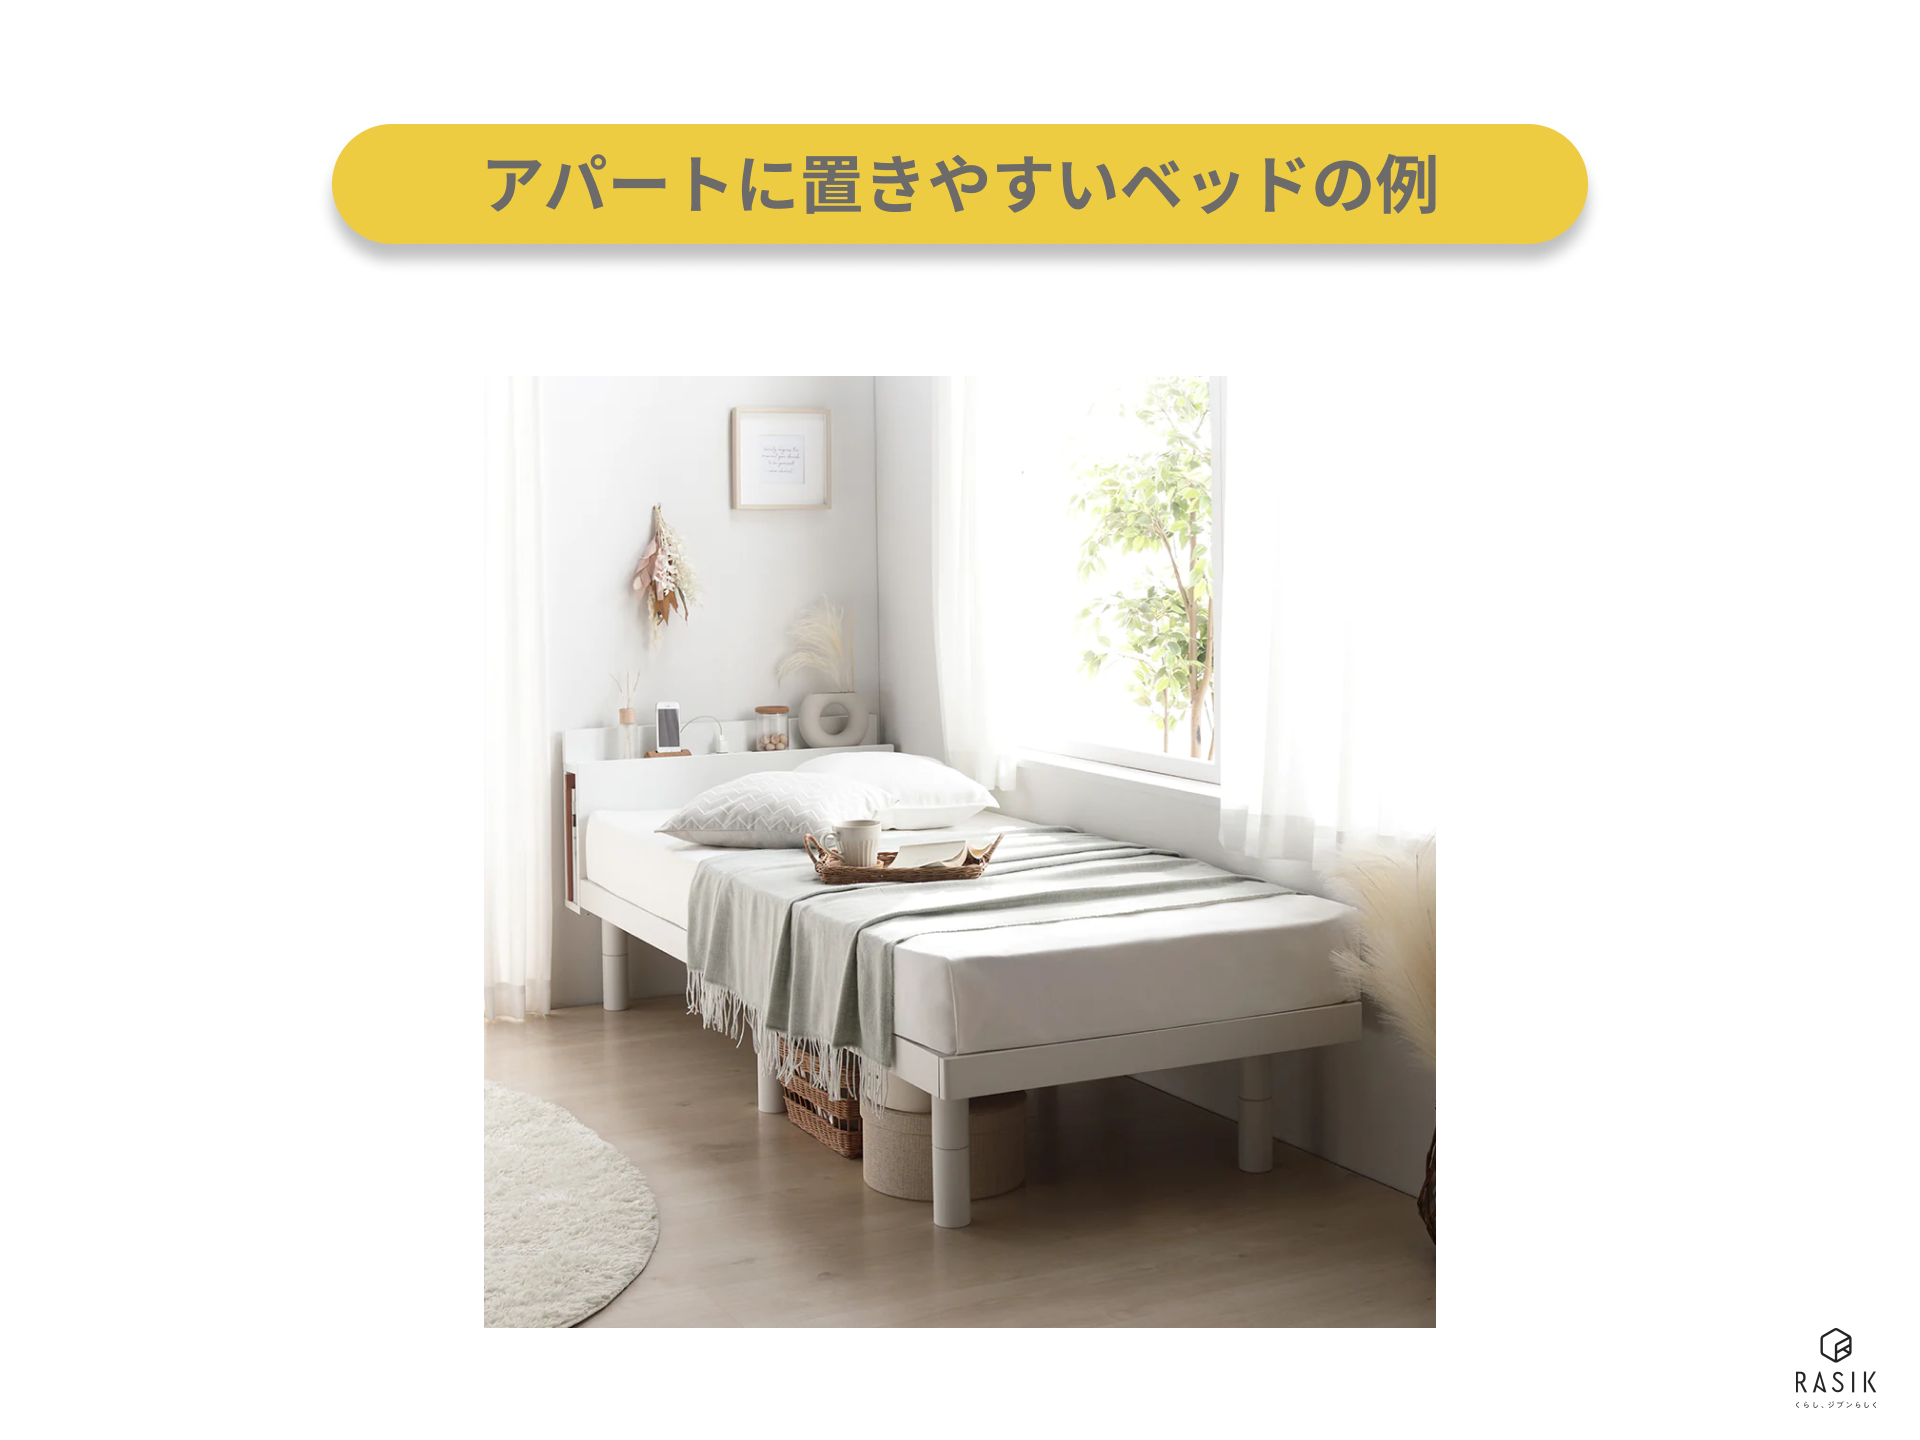 アパートに置きやすいベッドの例